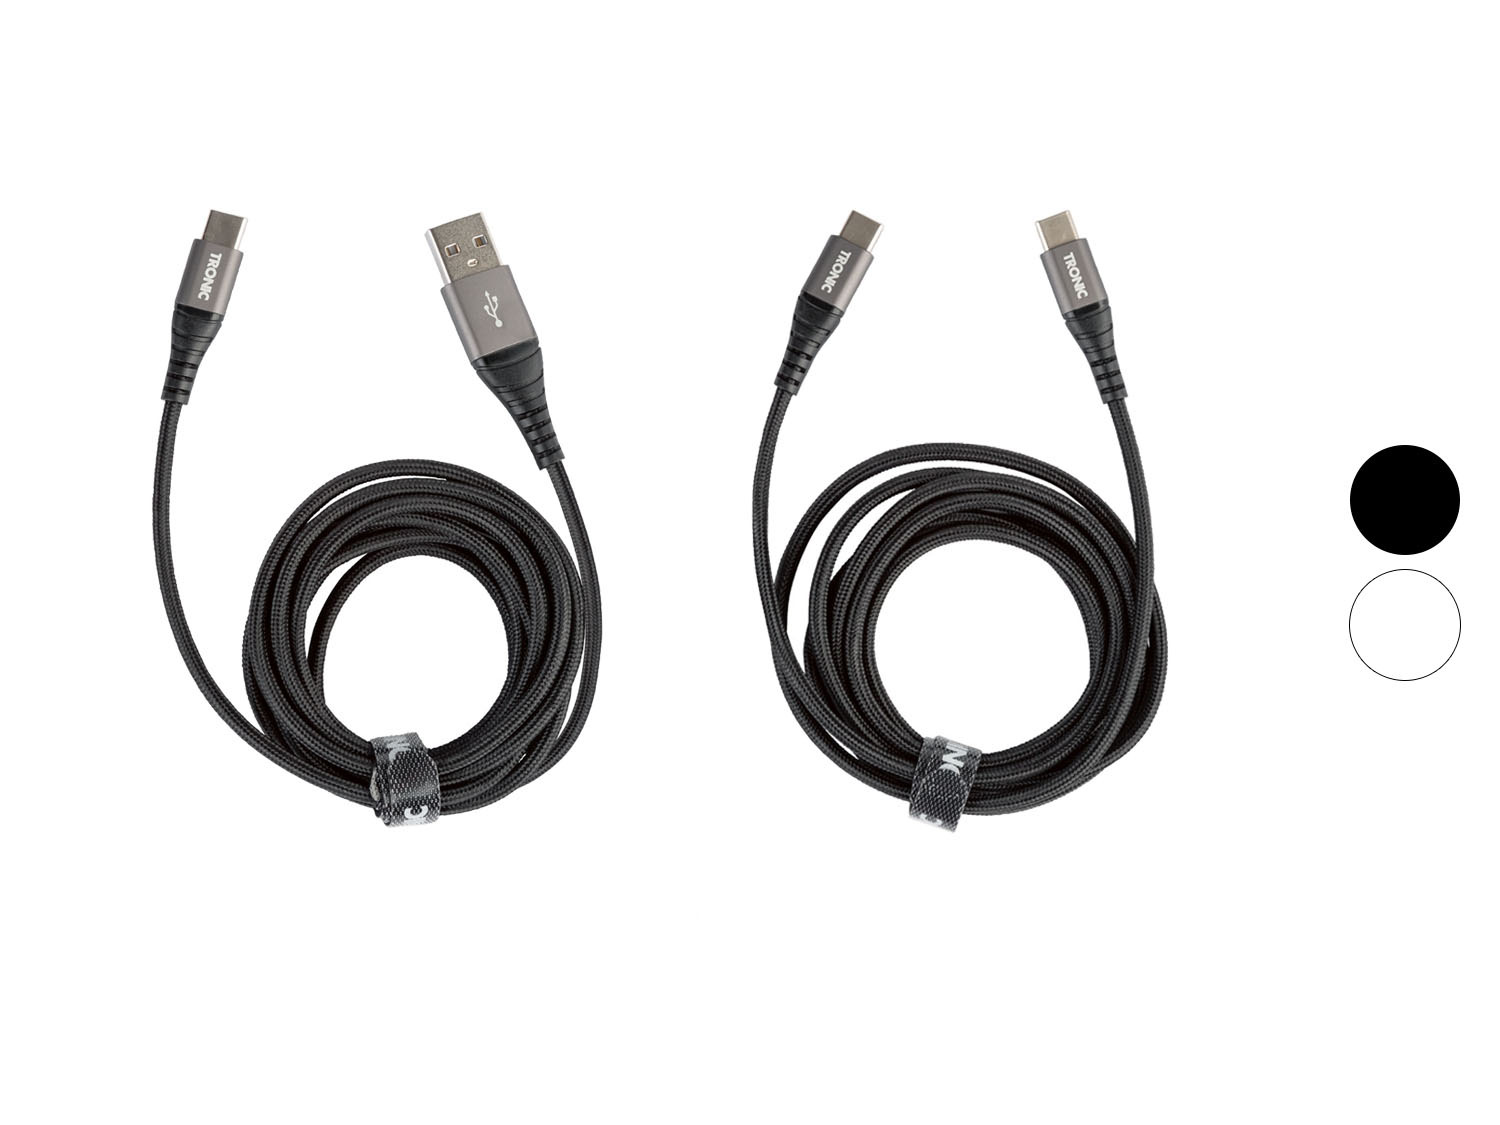 TRONIC® Lade- und Datenkabel Textil Metallstecker USB-C und USB-A 1m BQ8971